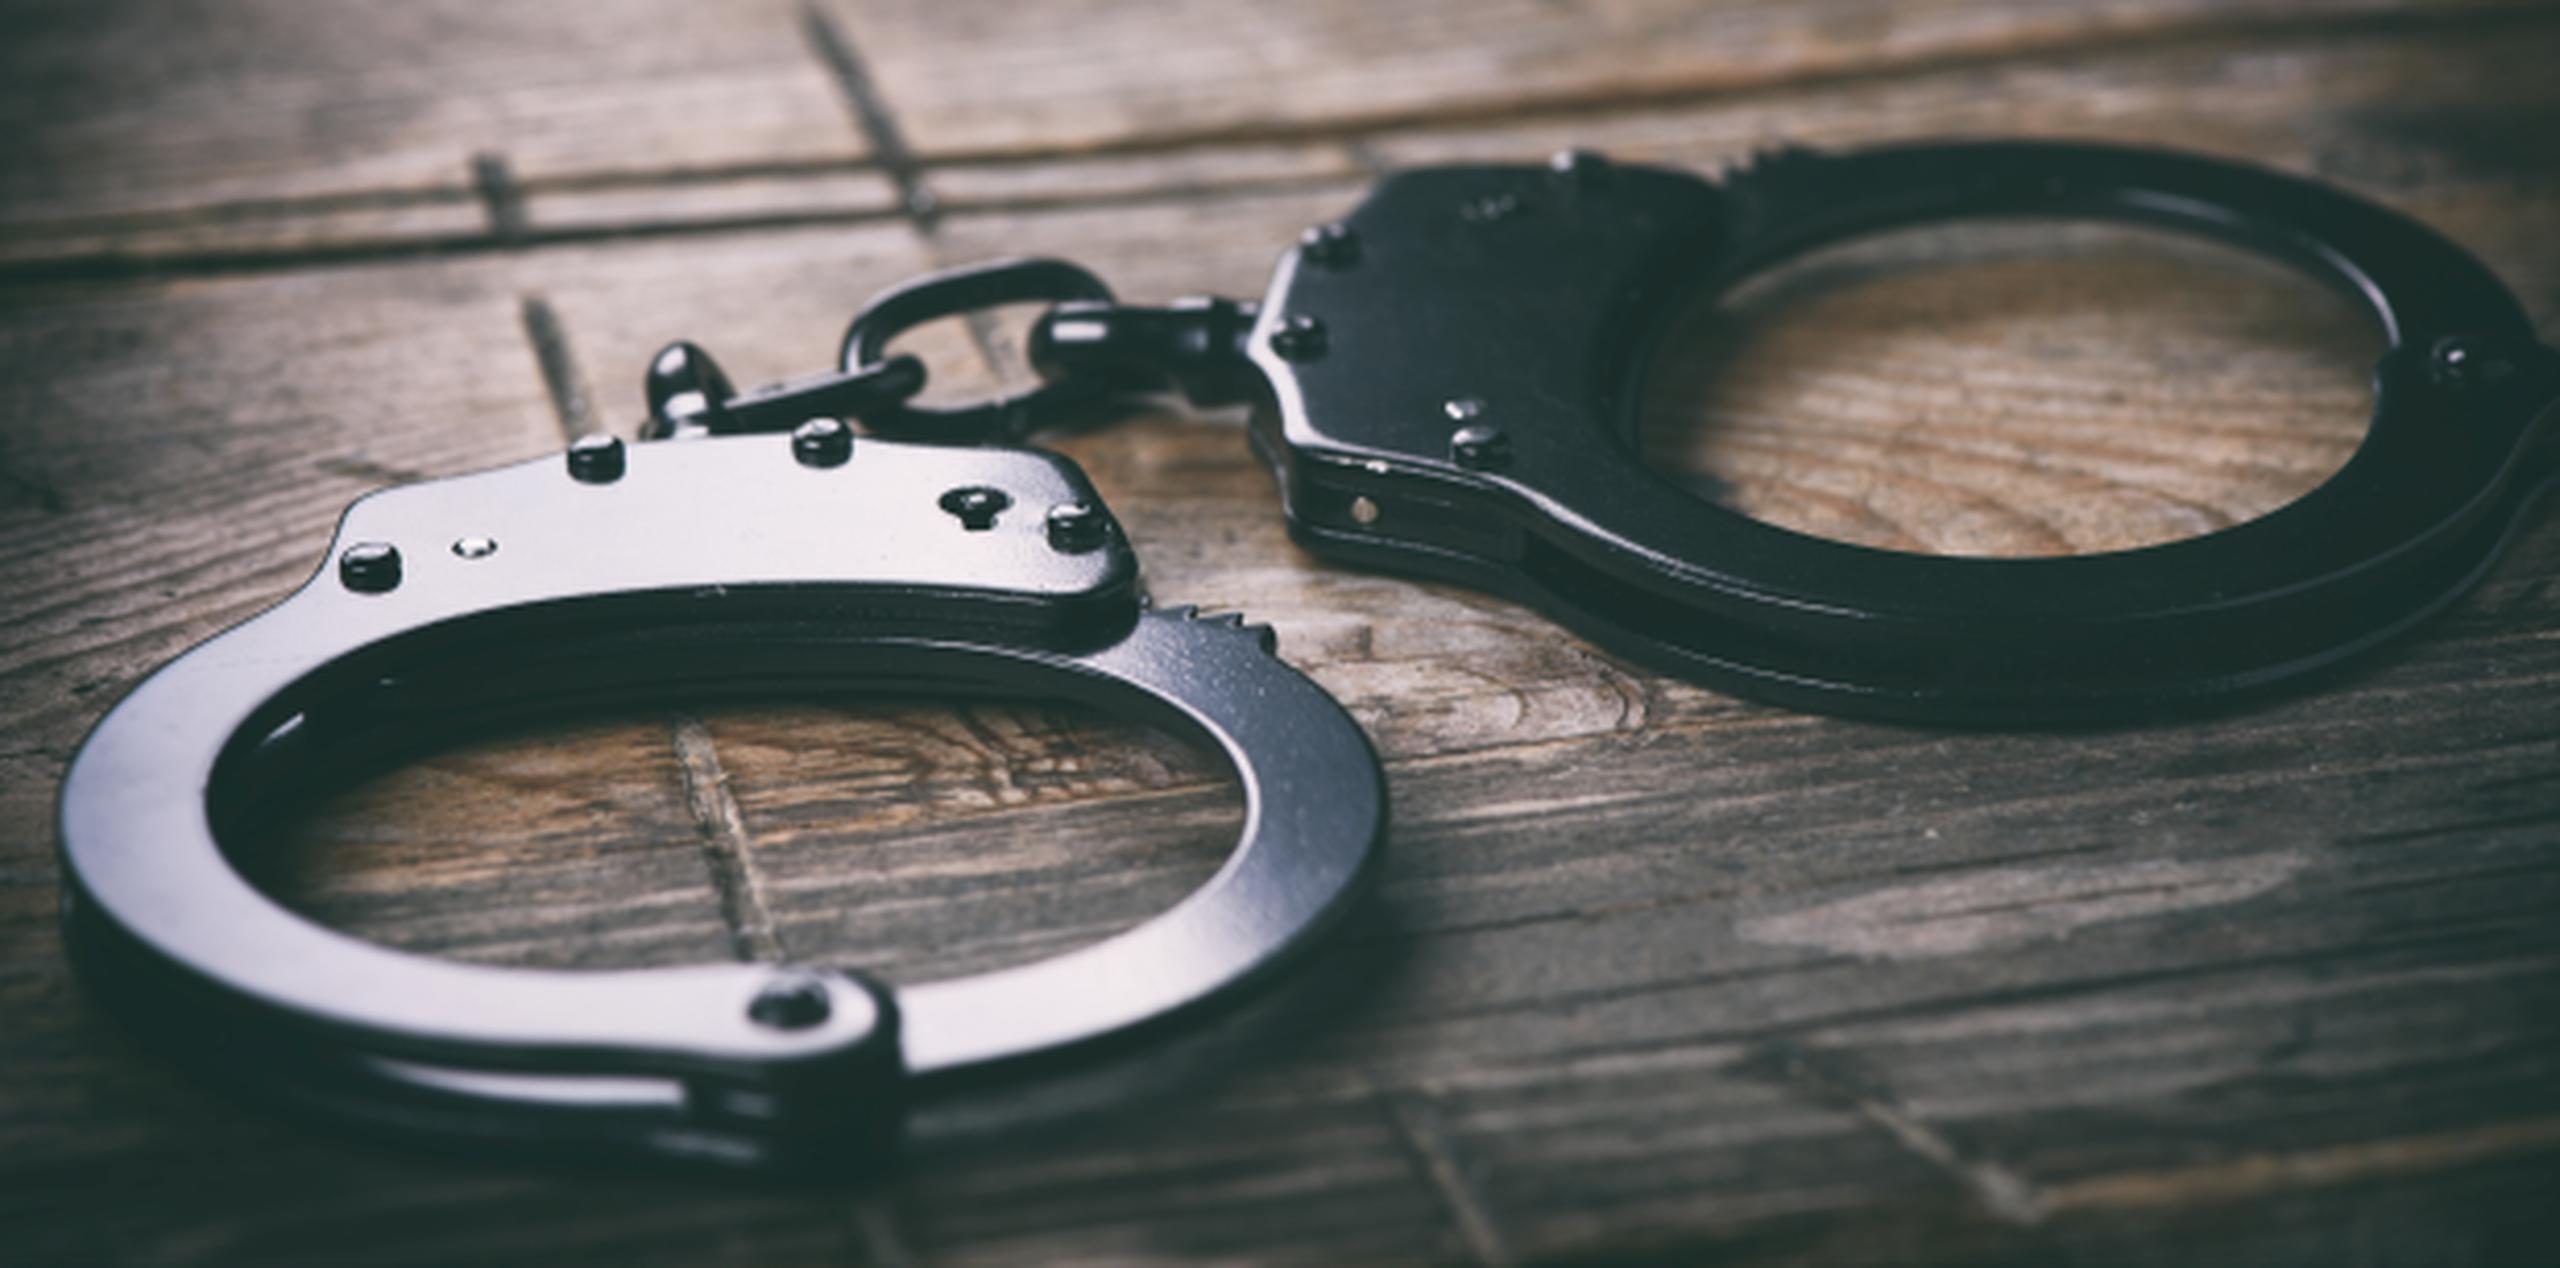 De ser encontrada culpable, la dueña se expone a 10 años de cárcel por cada una de las violaciones por maltrato, y seis años por violación de la Ley de Armas. (Shutterstock)